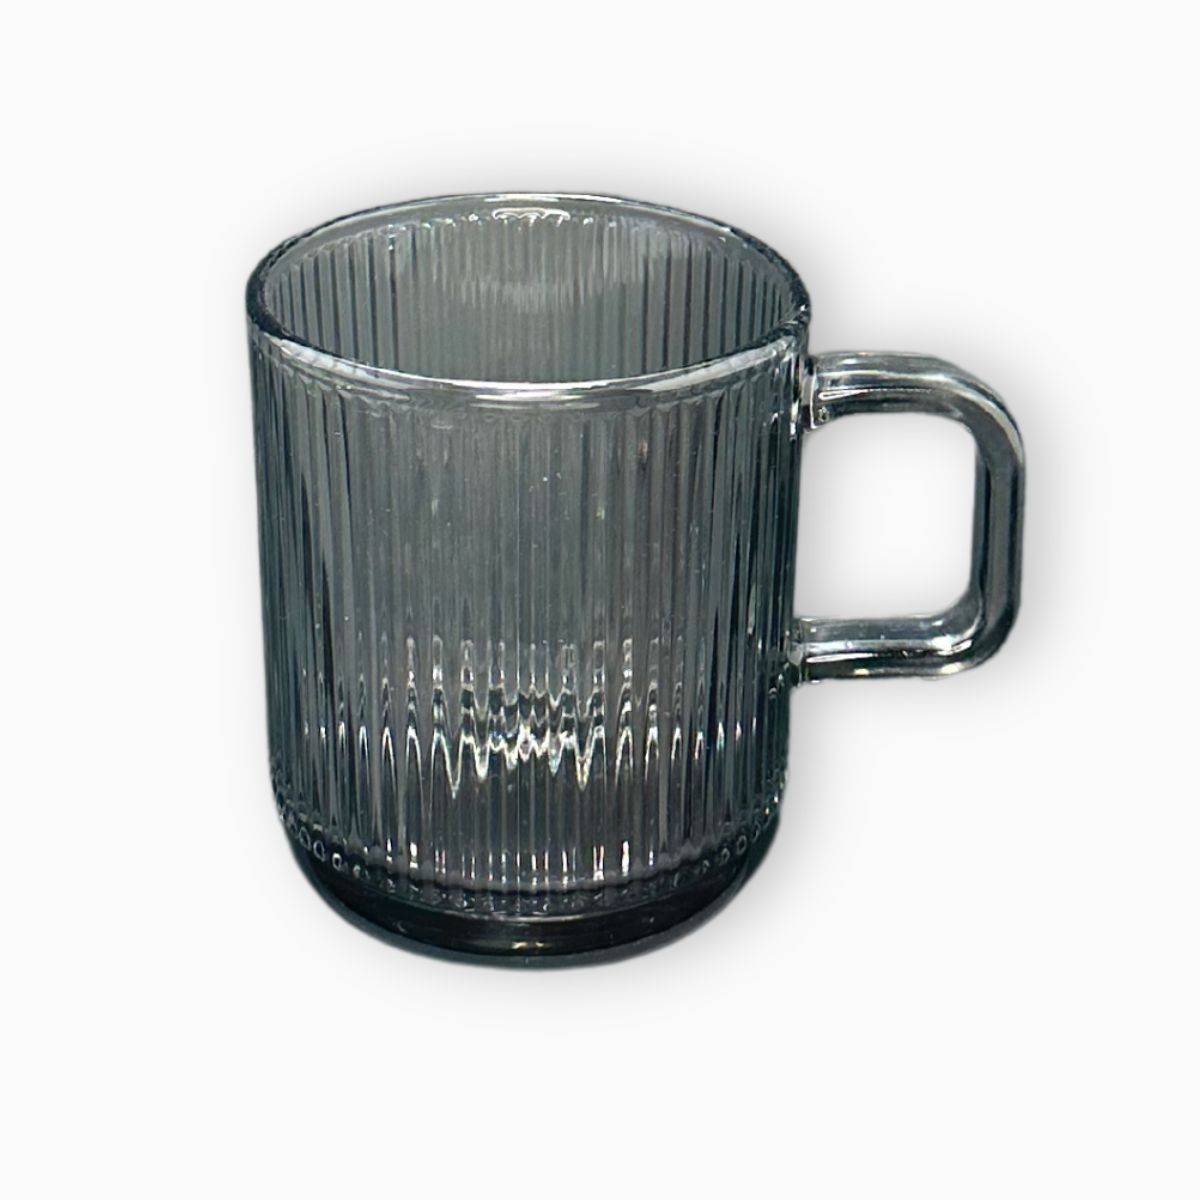 Glass mug - Black